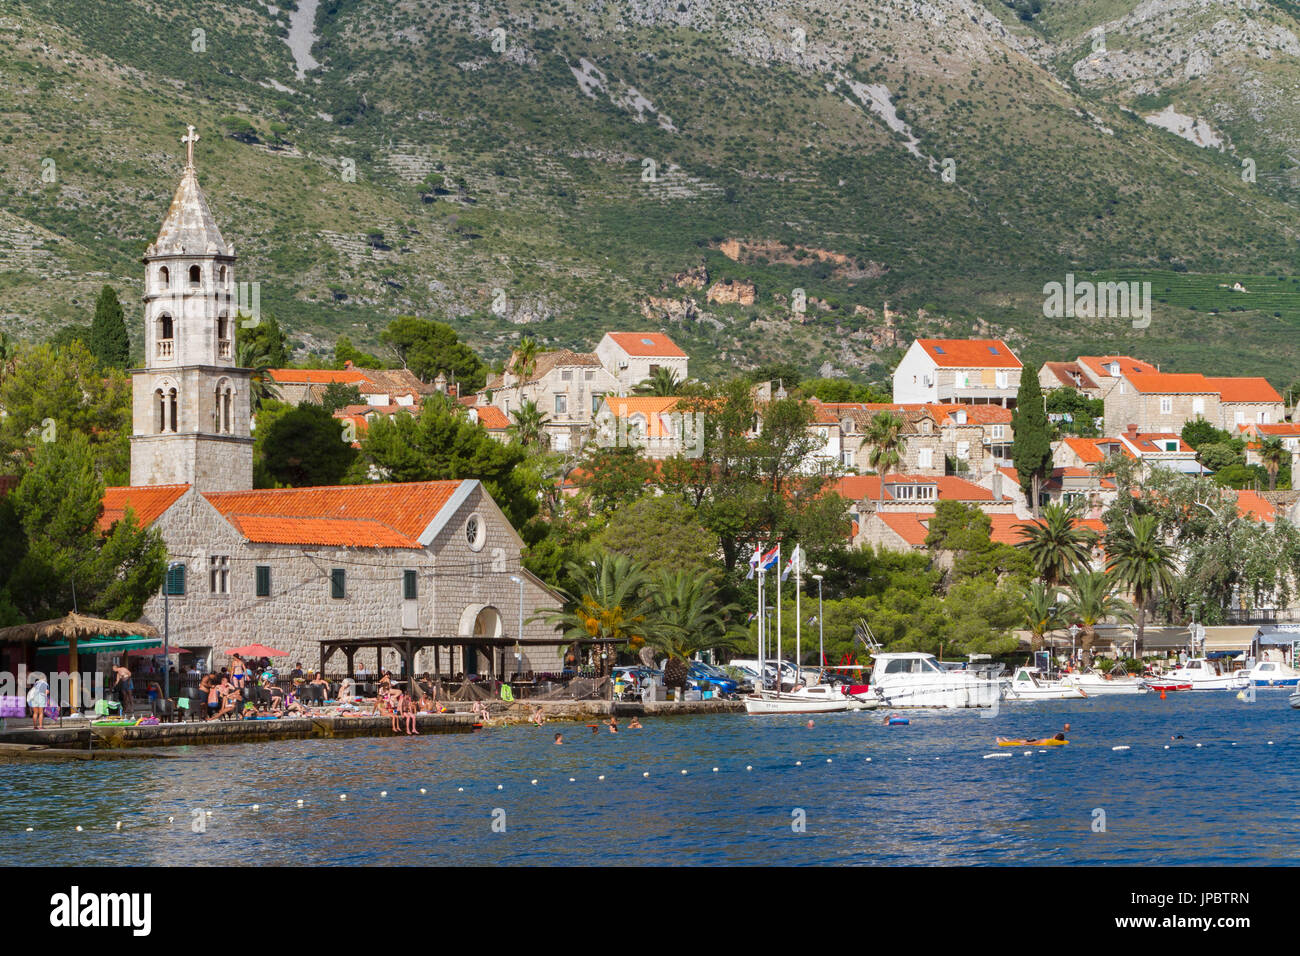 Village de Cavtat et port, vue depuis la mer (Konavle, Dubrovnik, Dubrovnik-Neretva county, région Dalmatie, Croatie, Europe) Banque D'Images